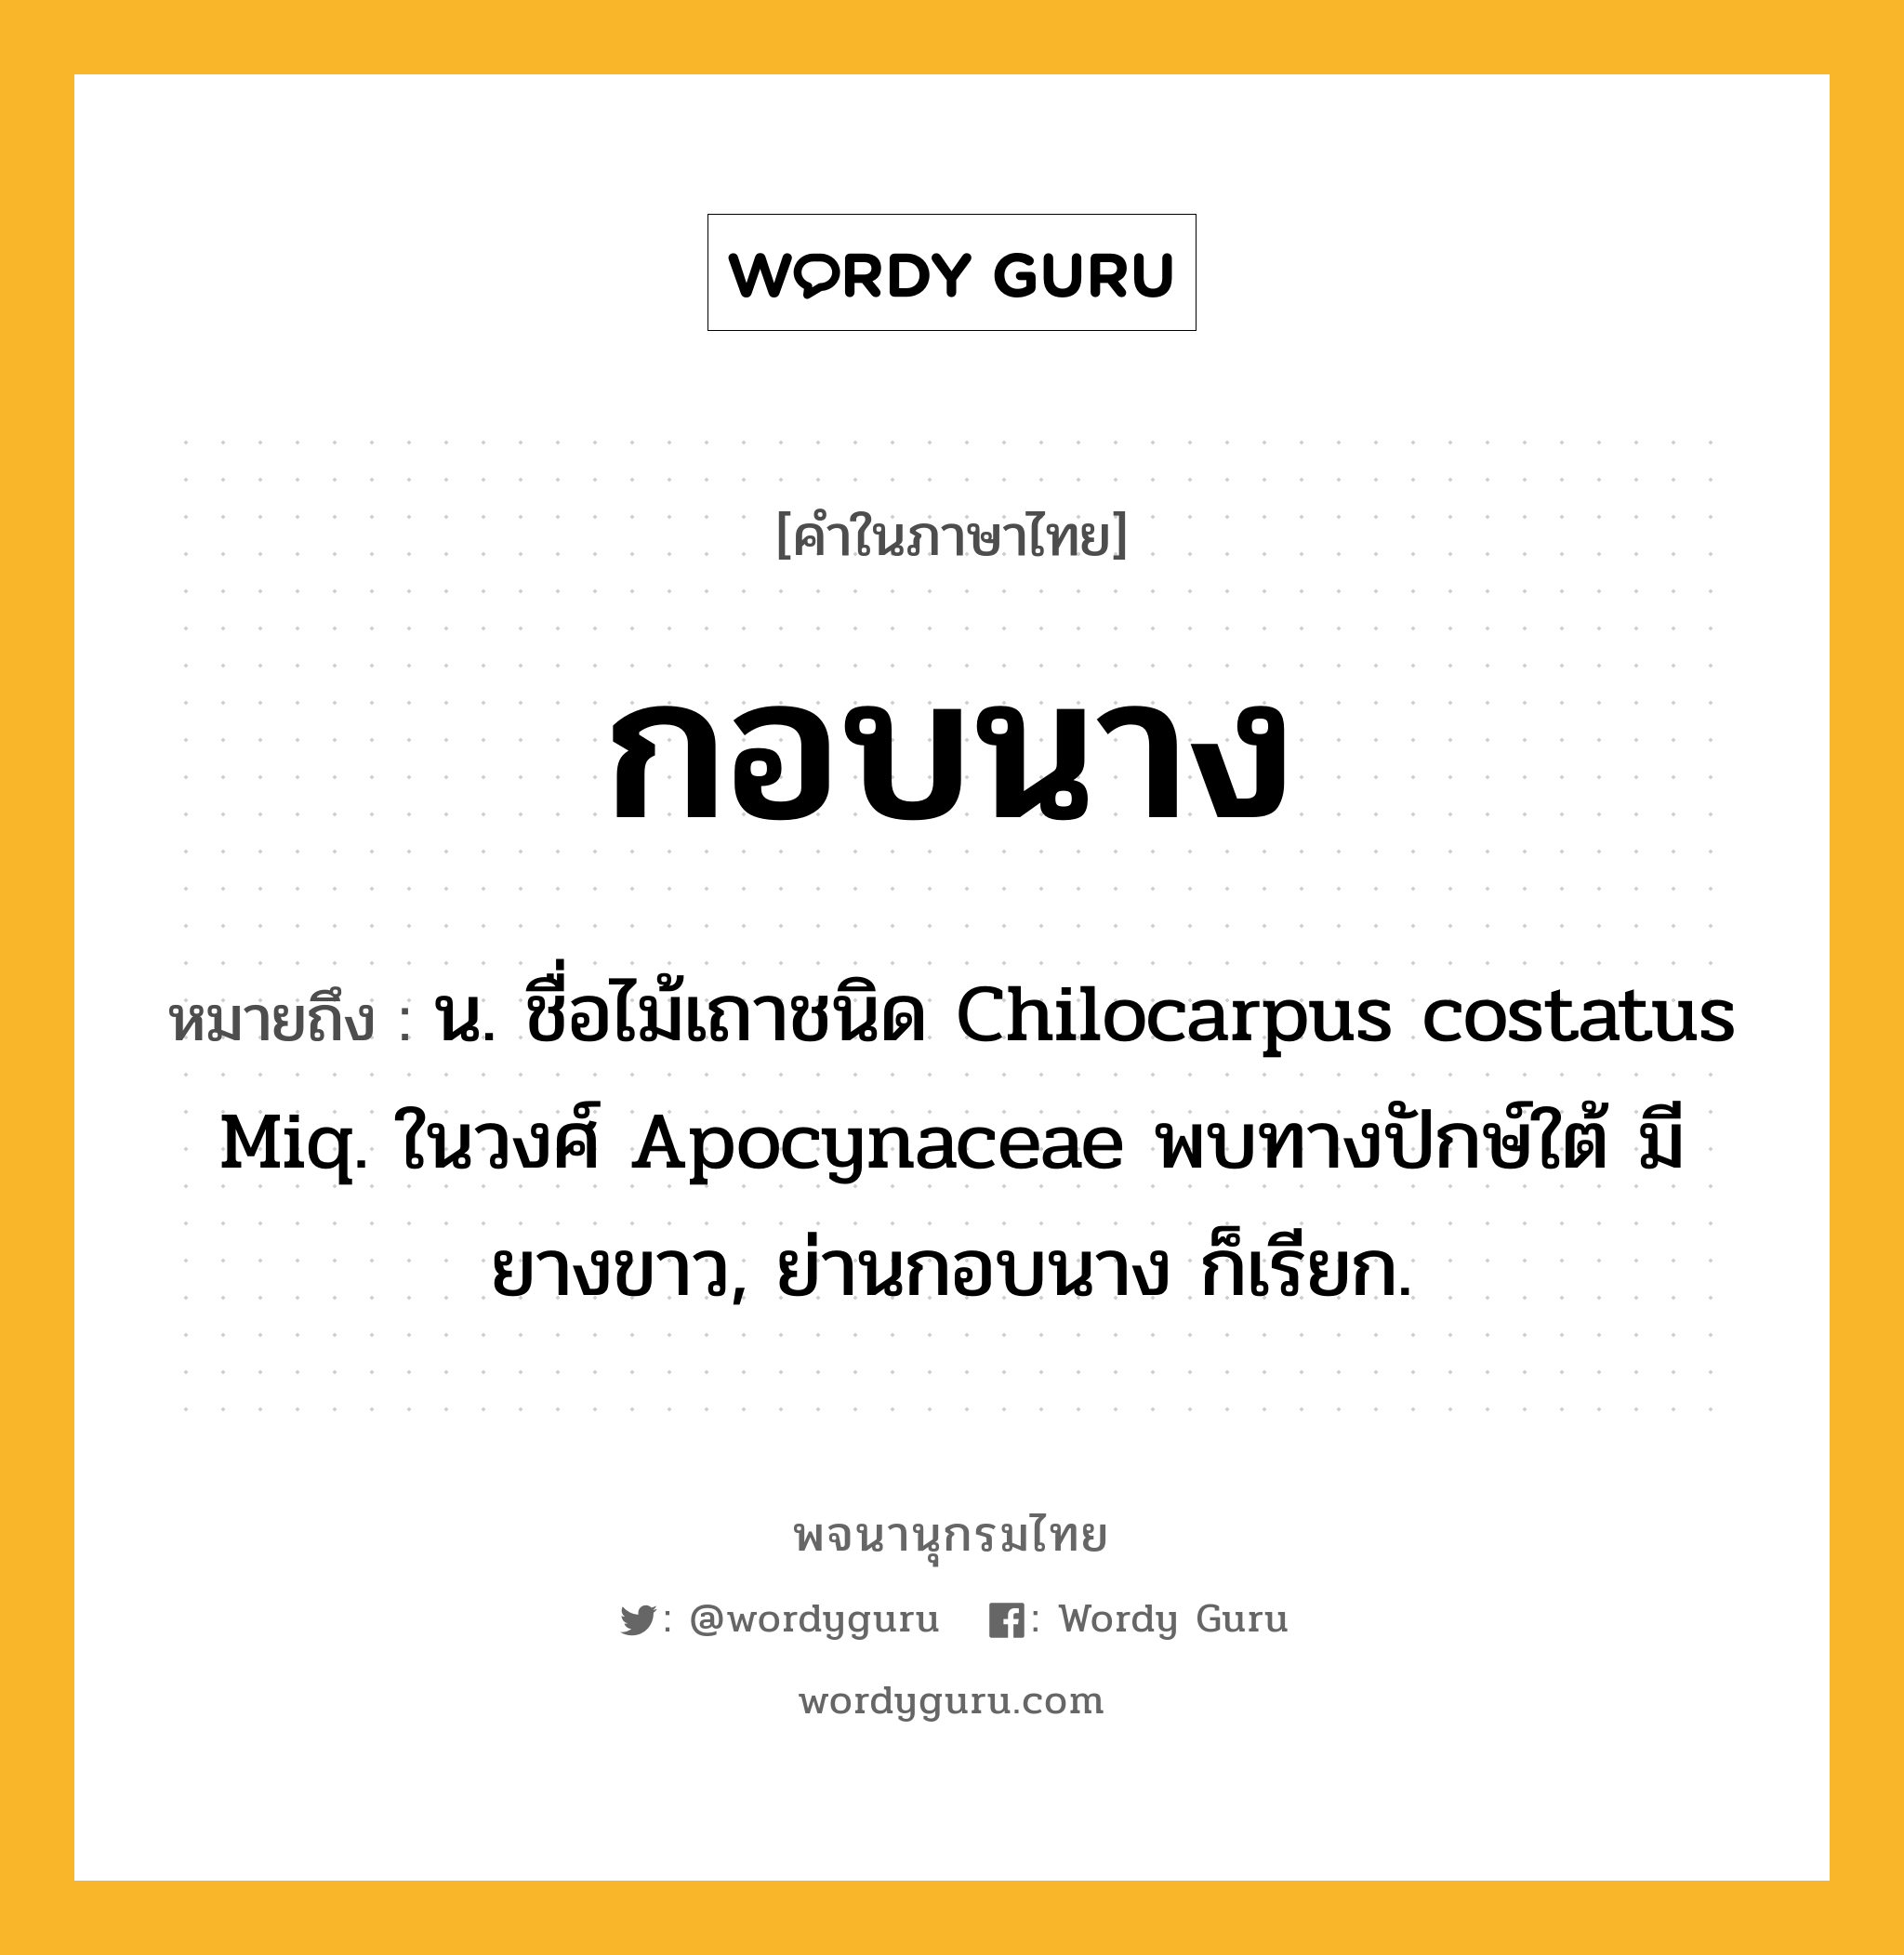 กอบนาง ความหมาย หมายถึงอะไร?, คำในภาษาไทย กอบนาง หมายถึง น. ชื่อไม้เถาชนิด Chilocarpus costatus Miq. ในวงศ์ Apocynaceae พบทางปักษ์ใต้ มียางขาว, ย่านกอบนาง ก็เรียก.